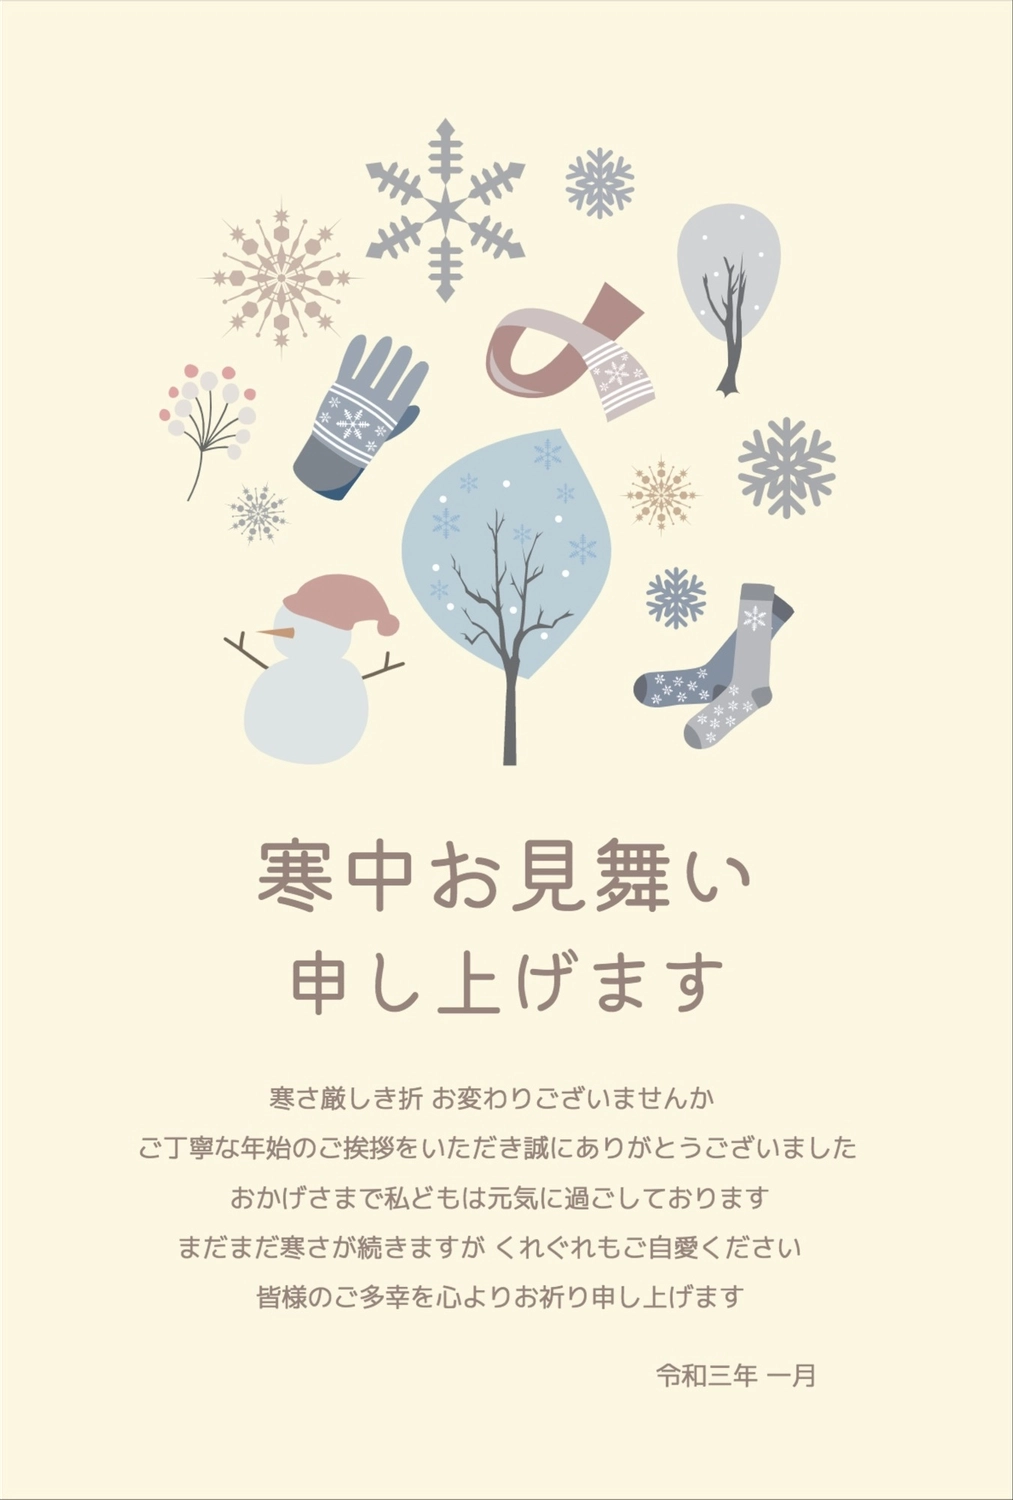 ナチュラルな寒中見舞い, pink, horizontal writing, vertical, Mid-winter Greeting template